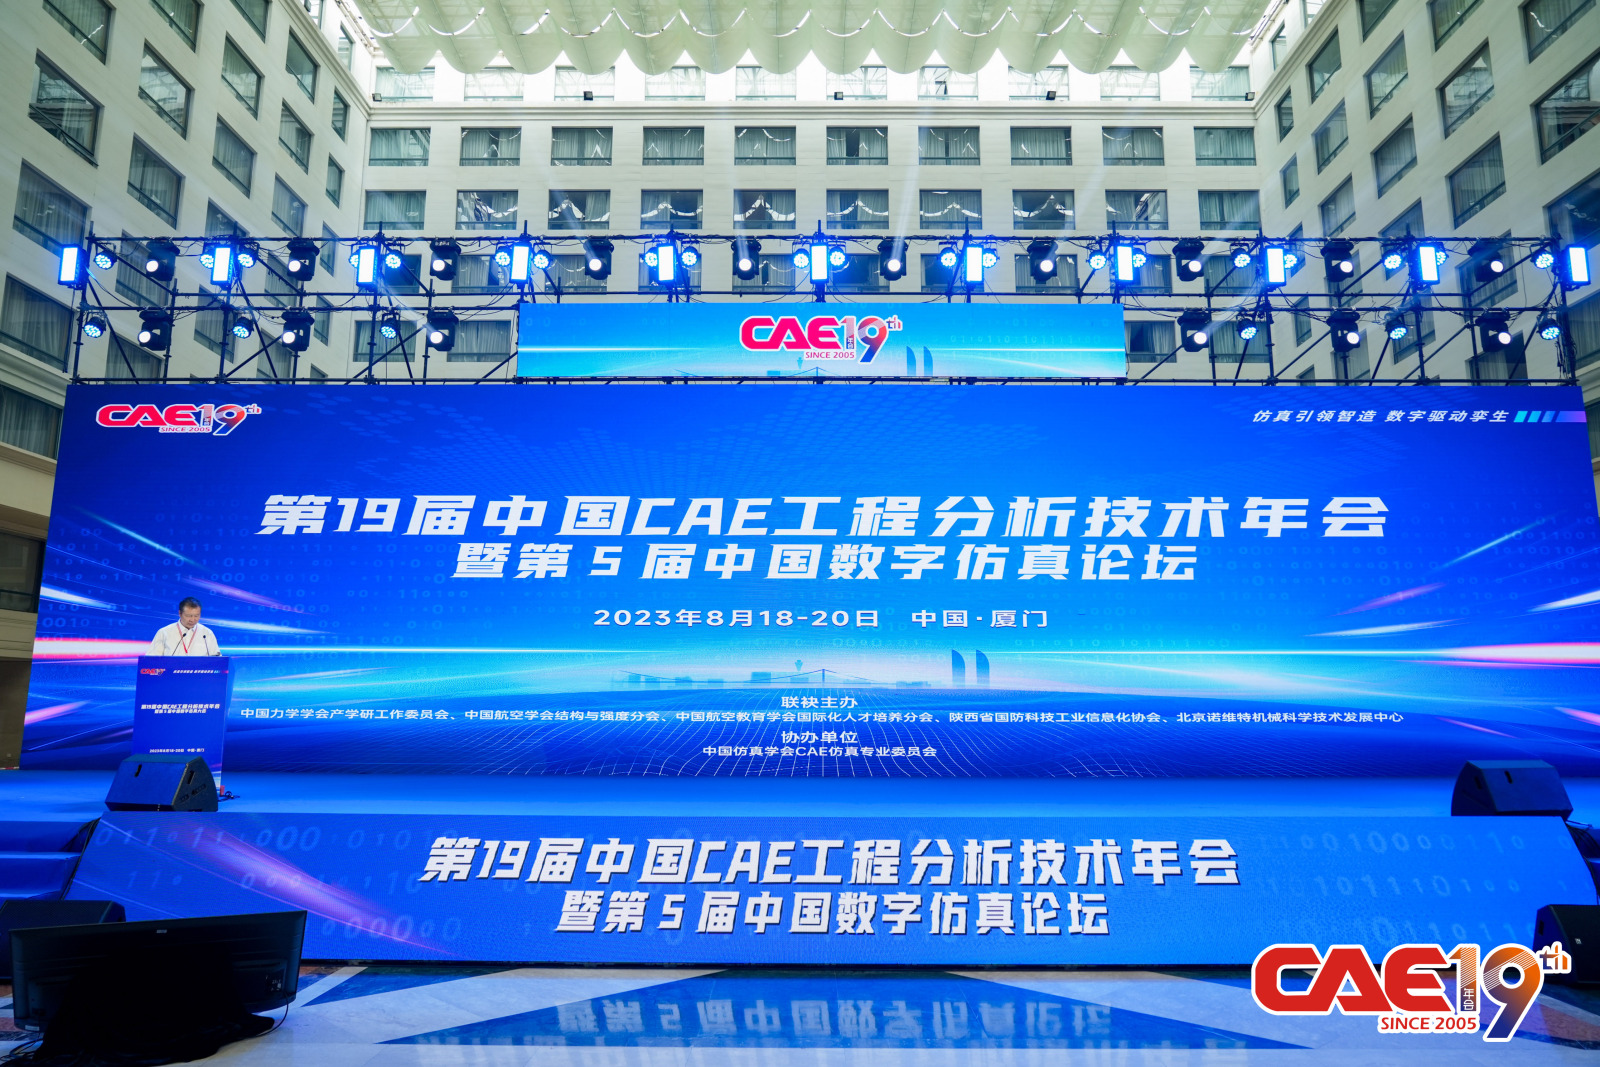 一睹“沣”采 | Galaxy银河8366cc在第19届中国CAE工程技术分析年会上表现亮眼